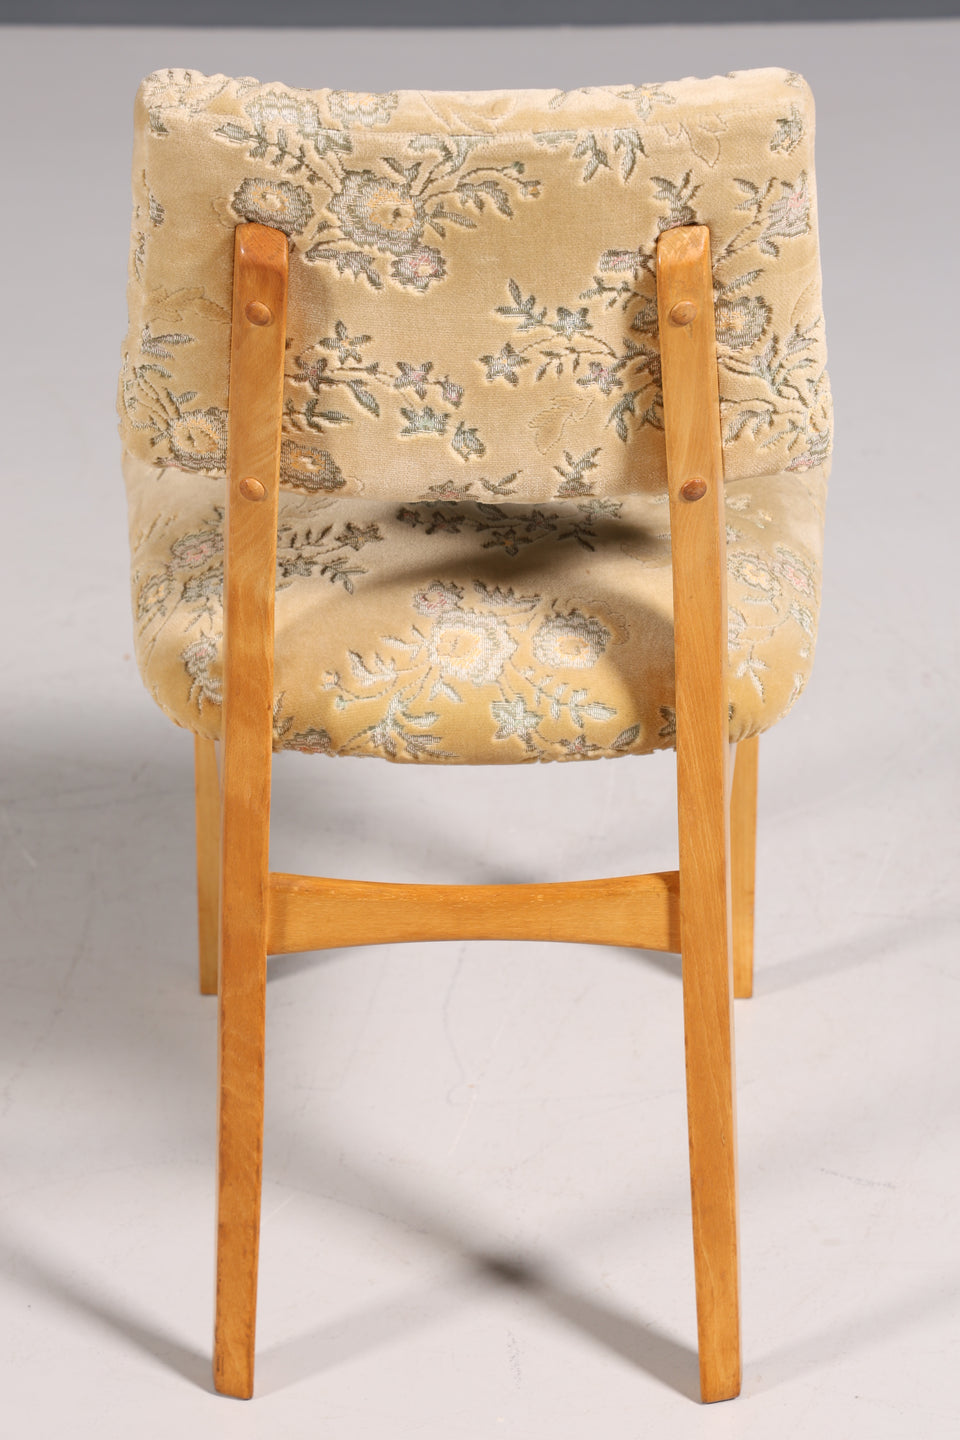 6x Traumhafte Original Hellerau Stühle Mid Century Retro Küchenstuhl Set mit floralen Muster